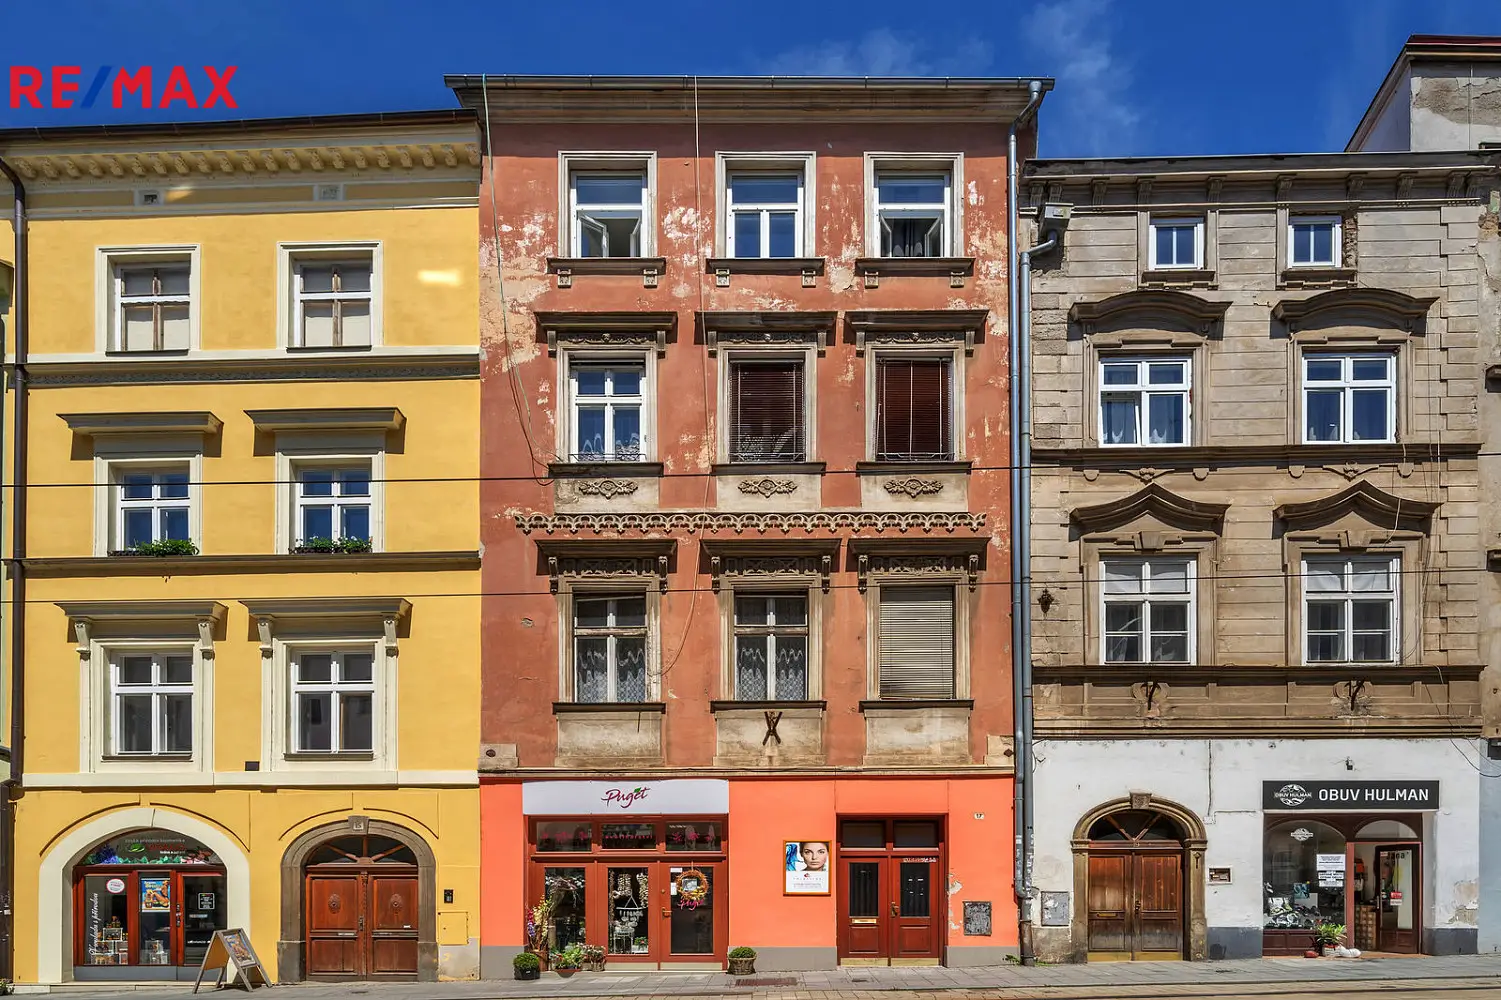 Denisova, Olomouc